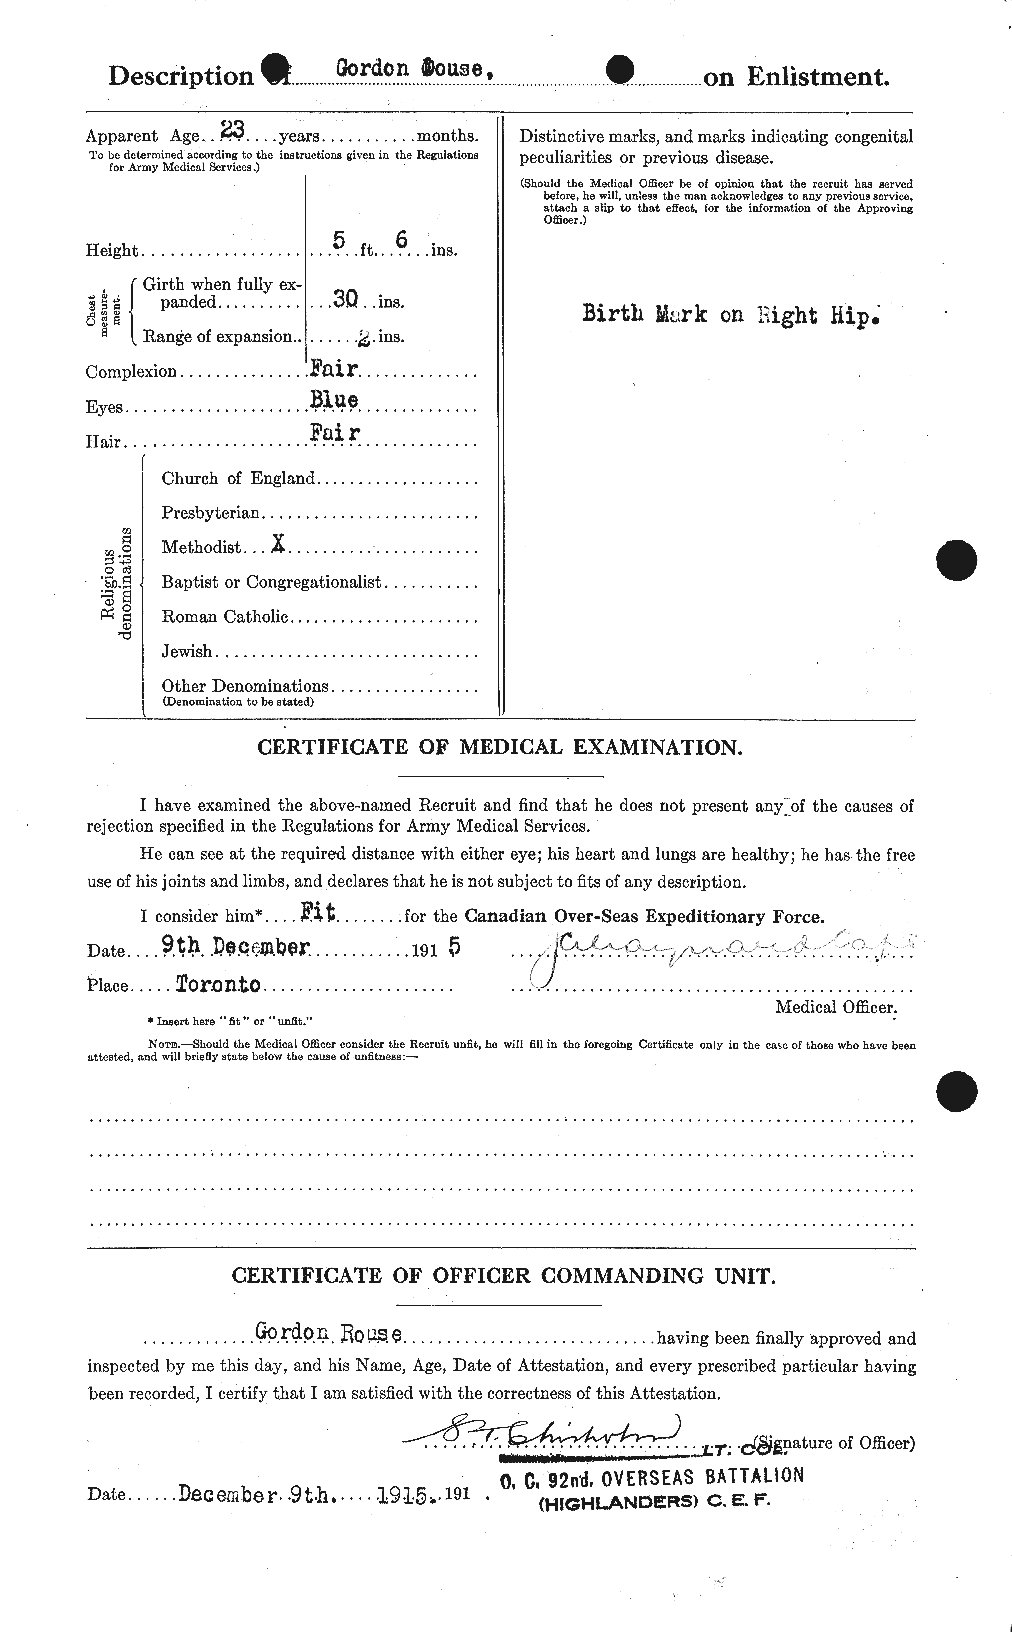 Dossiers du Personnel de la Première Guerre mondiale - CEC 296893b